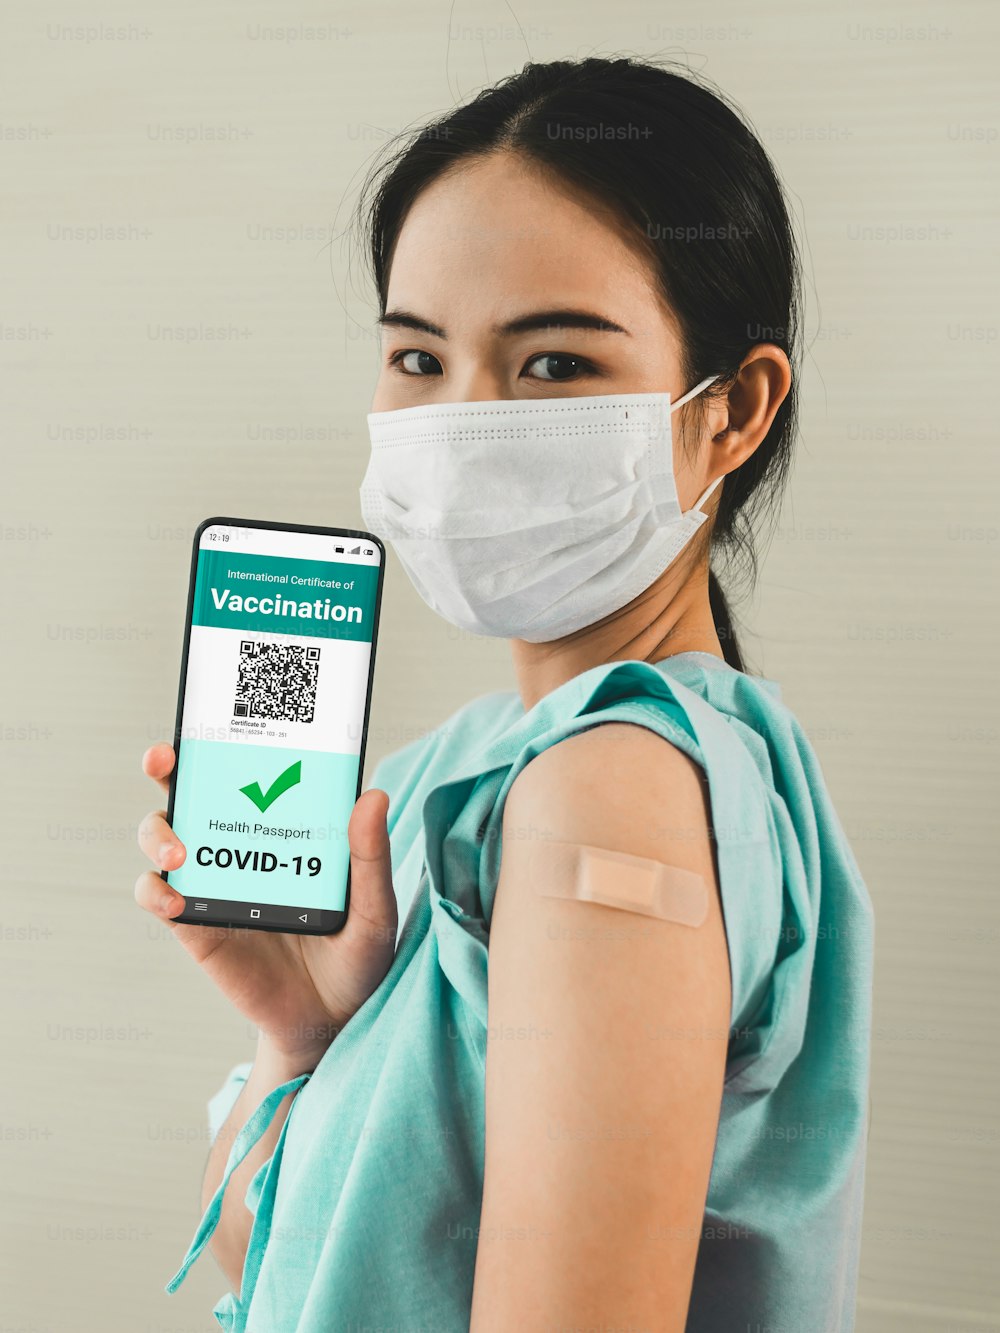 Une jeune femme asiatique montre son passeport vaccinal sur son téléphone portable pour valider l’autorisation de voyage par le document numérique